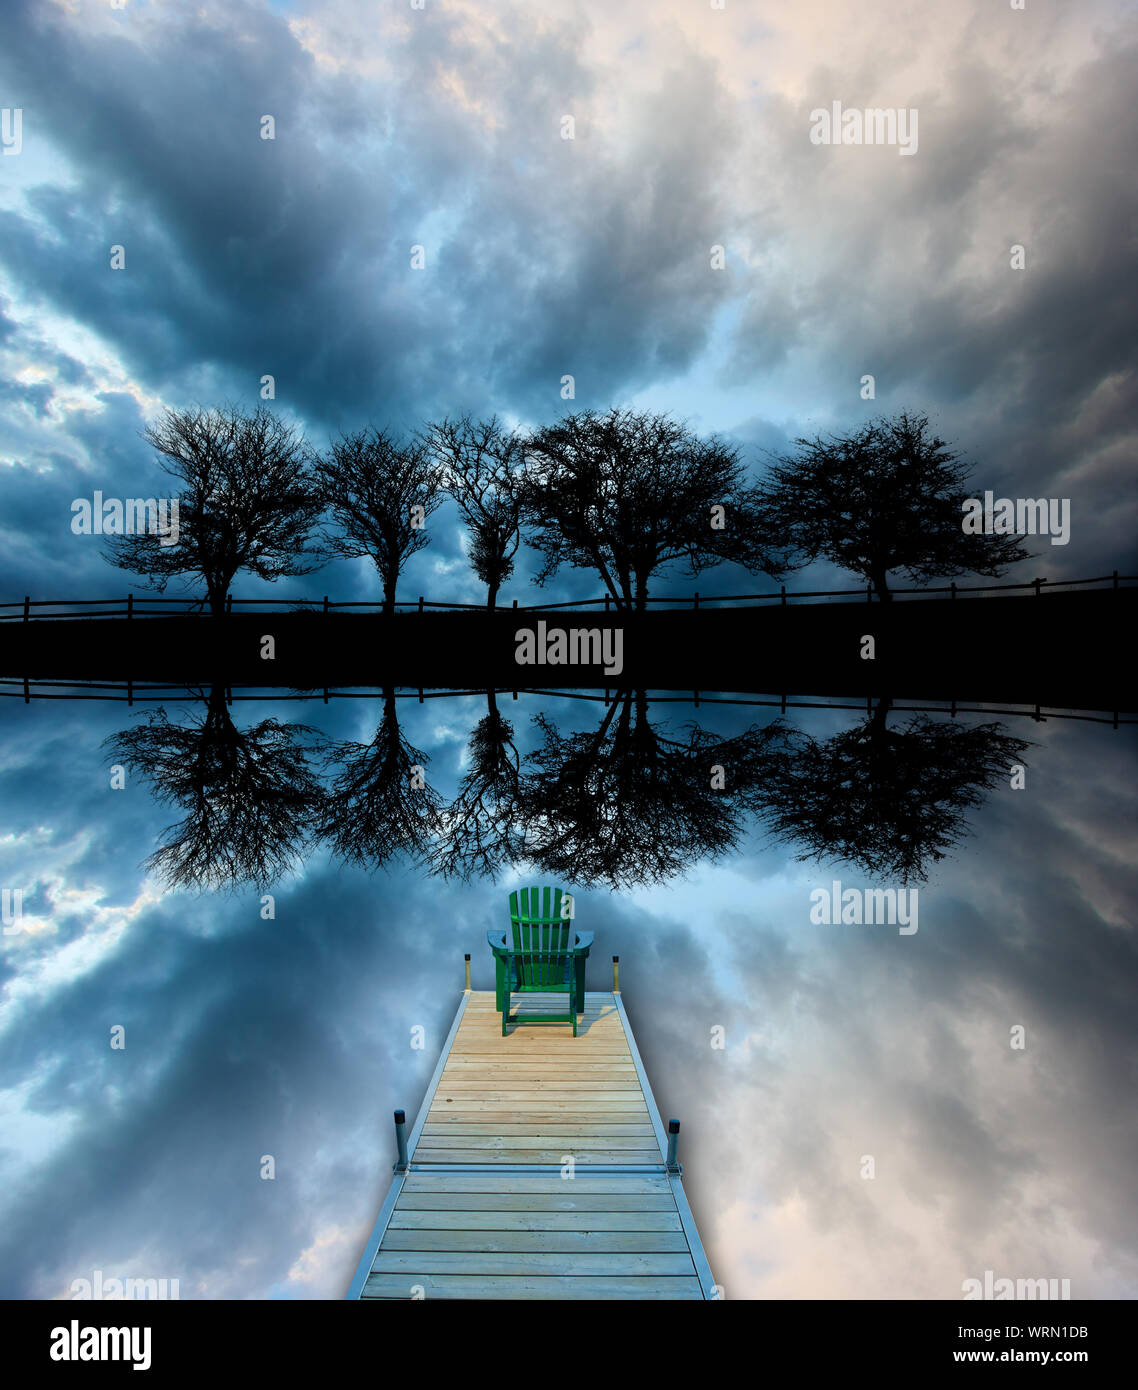 Image miroir de cinq arbres le long d'une route silhouetté contre nuages orageux avec une chaise Adirondack assis sur un quai, Stowe au Vermont, USA Banque D'Images